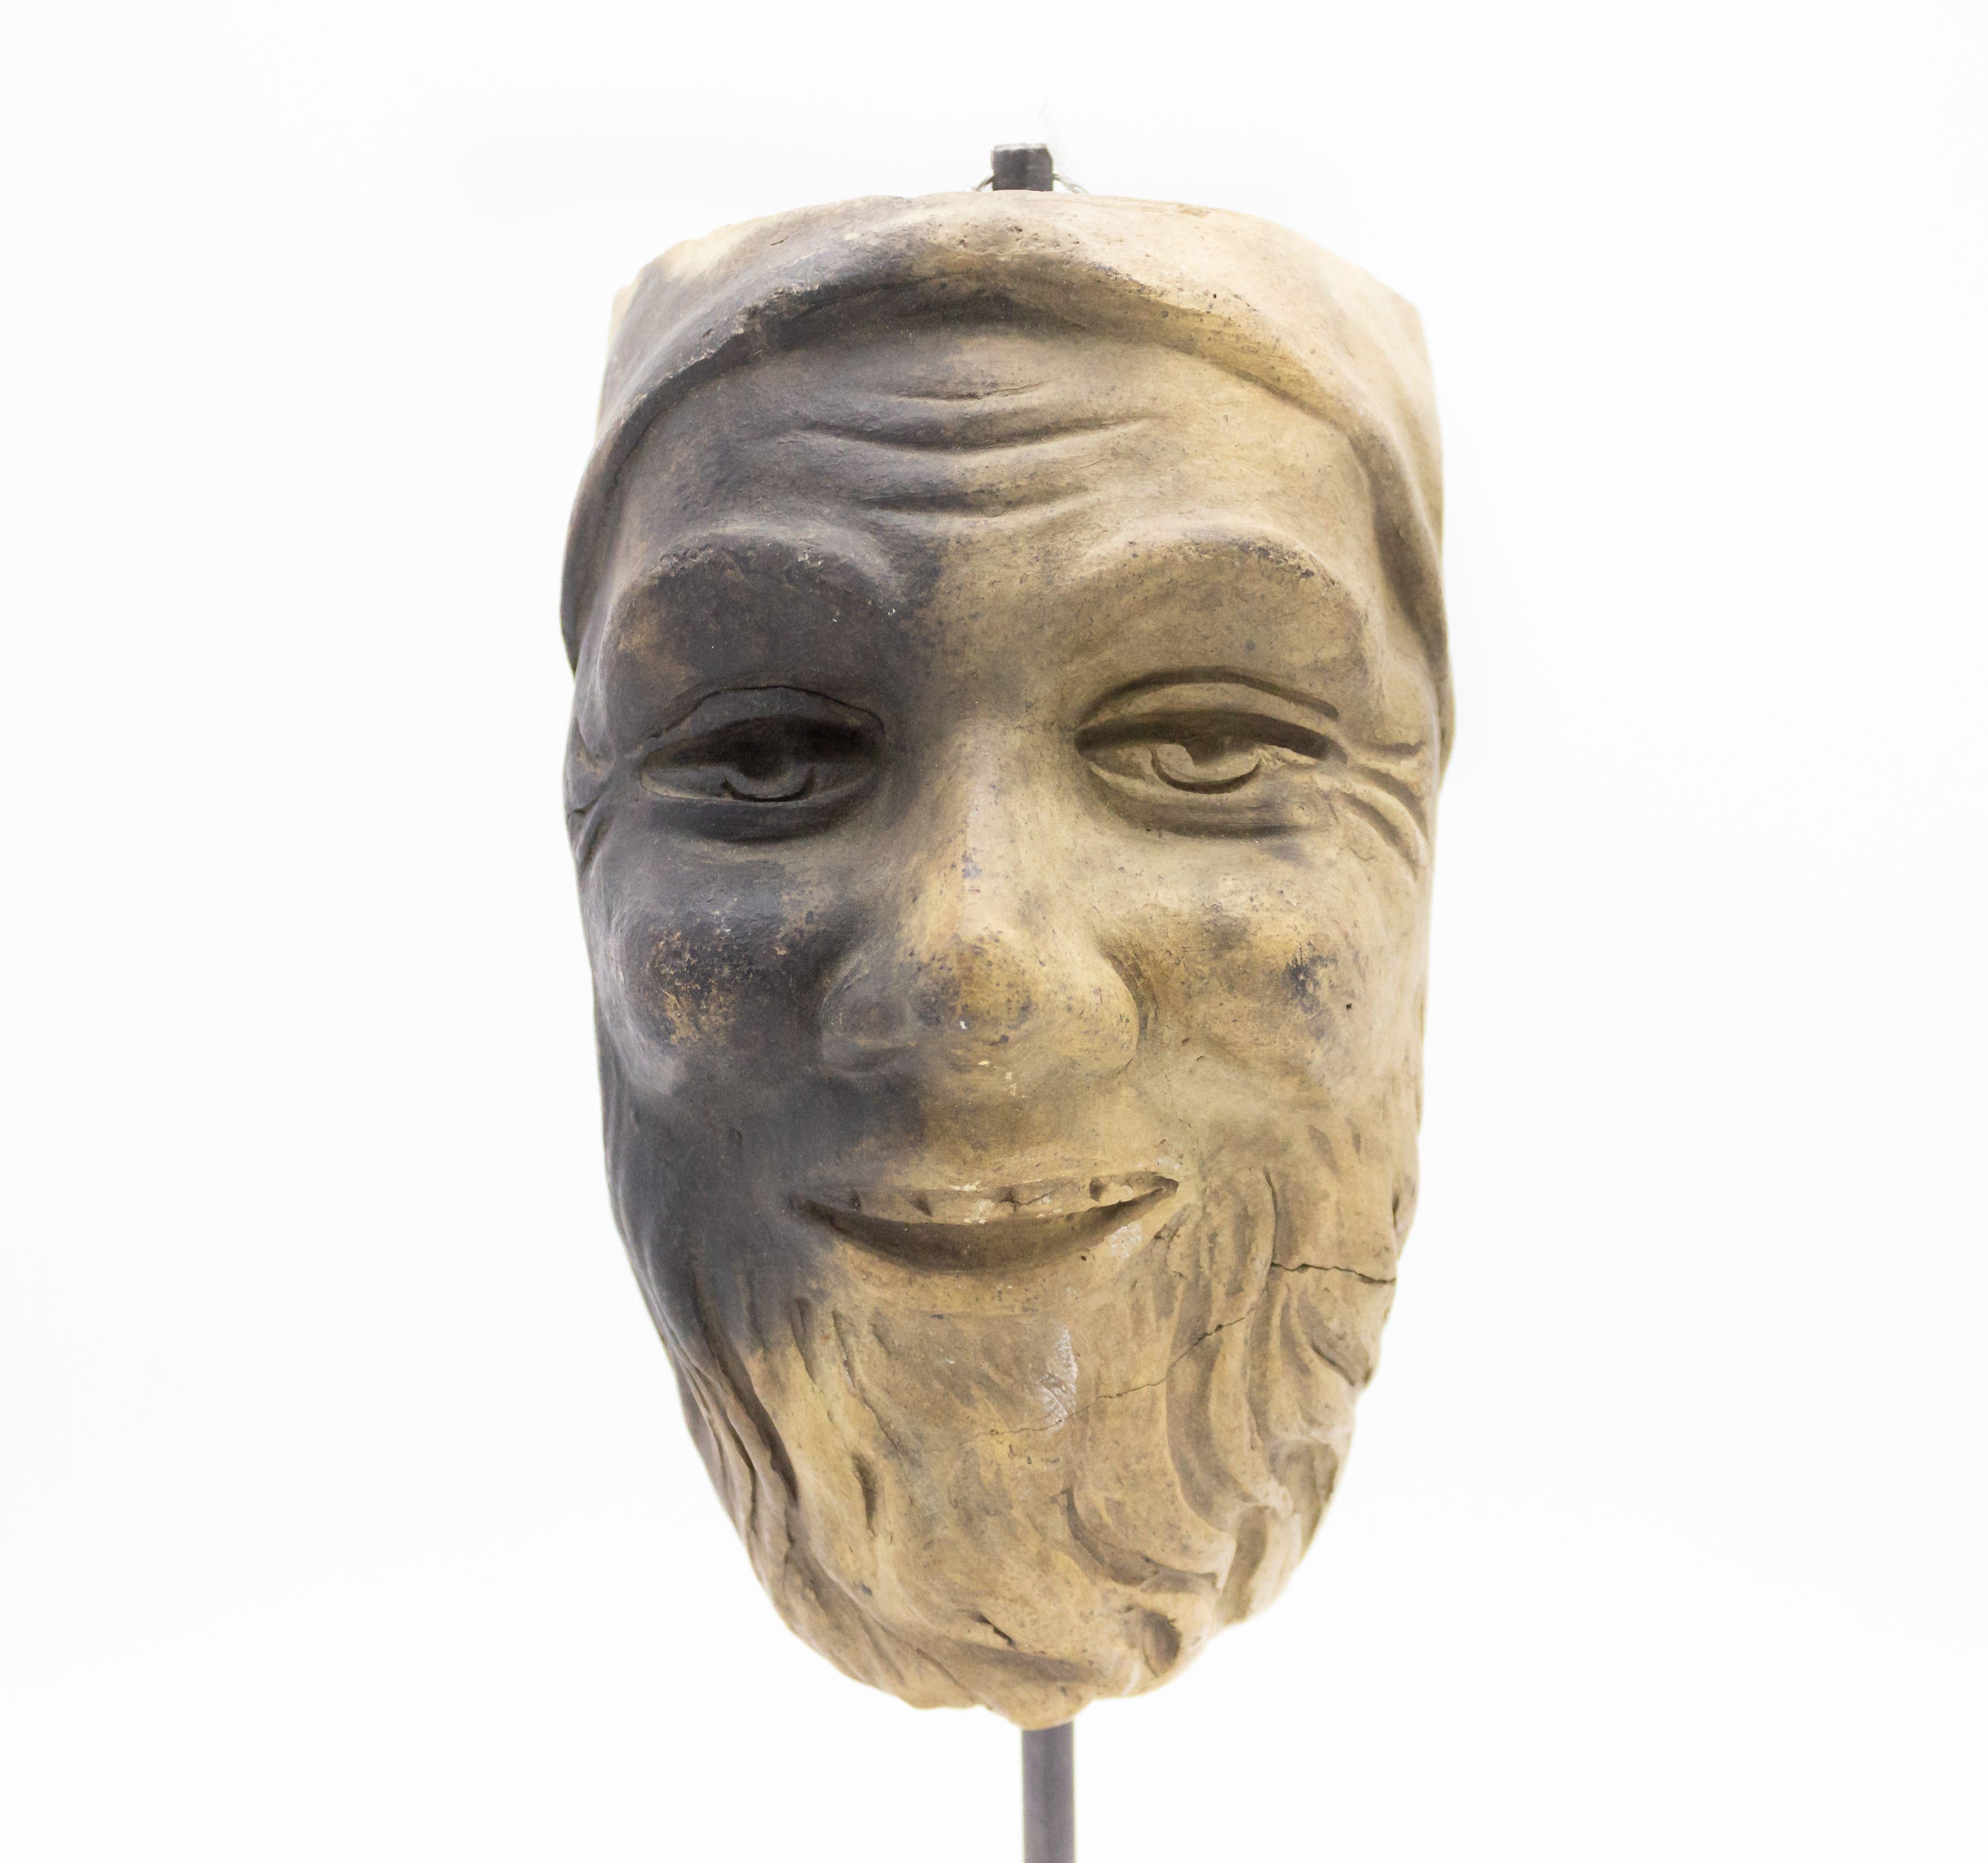 Moule de masque de maître en terre cuite sculpté en Allemagne continentale (fin du 19e siècle) représentant un homme souriant avec une barbe et une casquette, présenté sur un socle carré en marbre noir (partie d'une collection de 39 pièces).
     